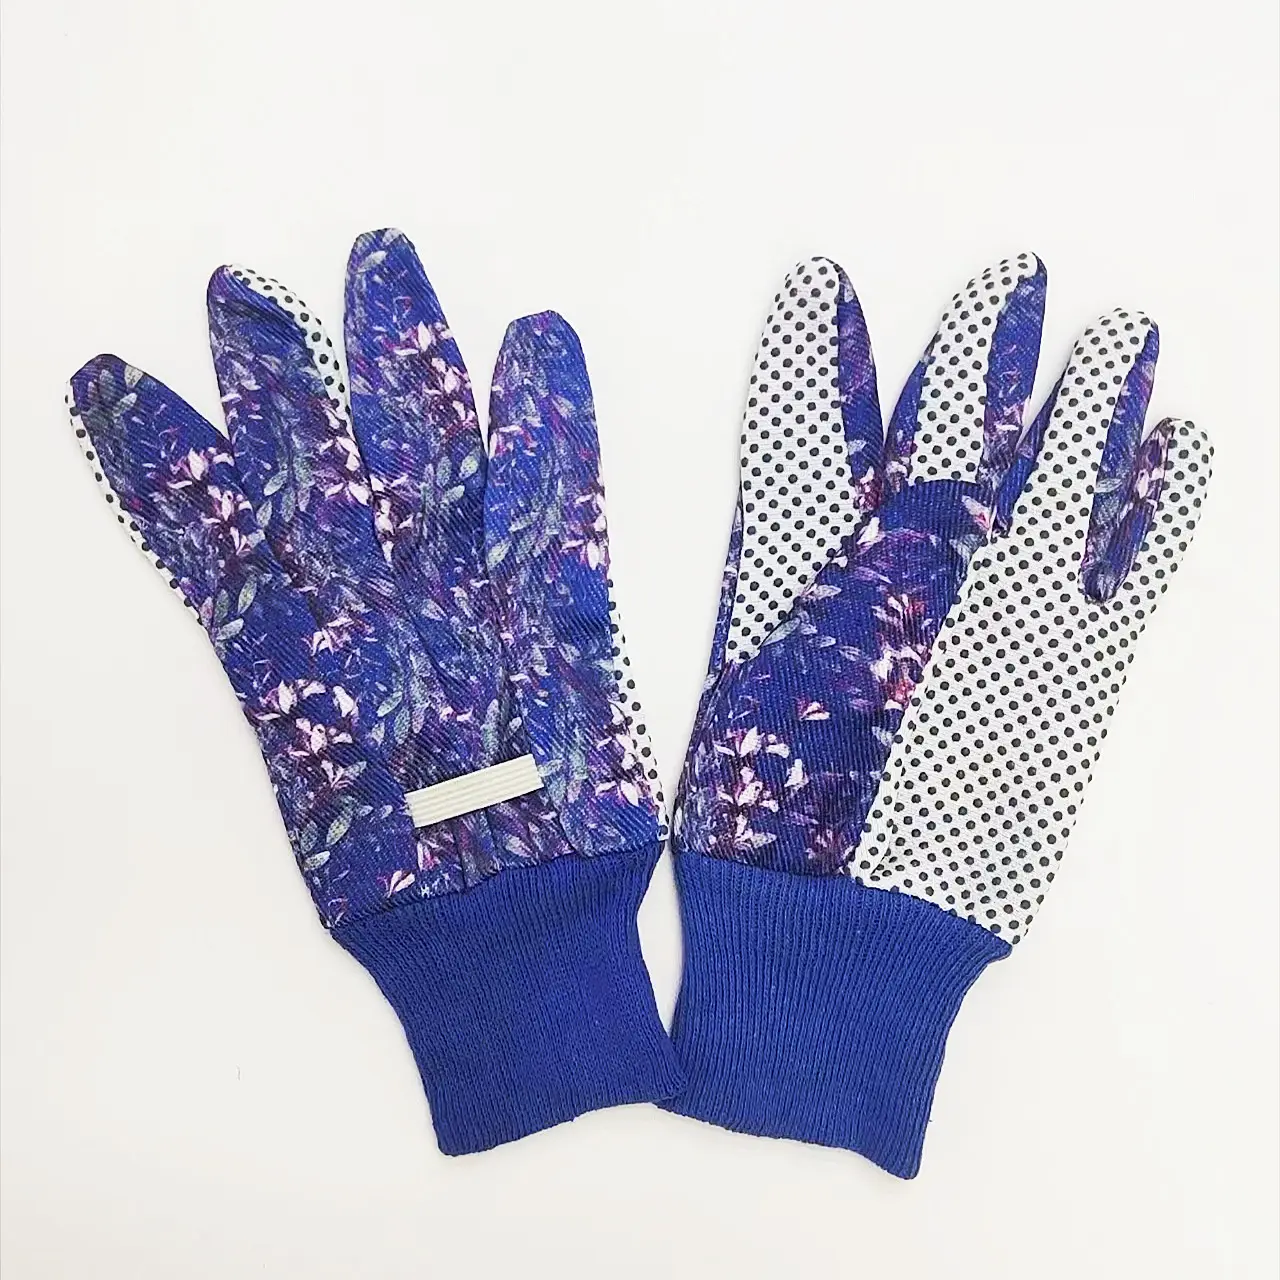 Wholesale Popular High Quality Cotton Canvas Gloves Glue Point Garden Craft Work Fashion Women's Hand Gloves